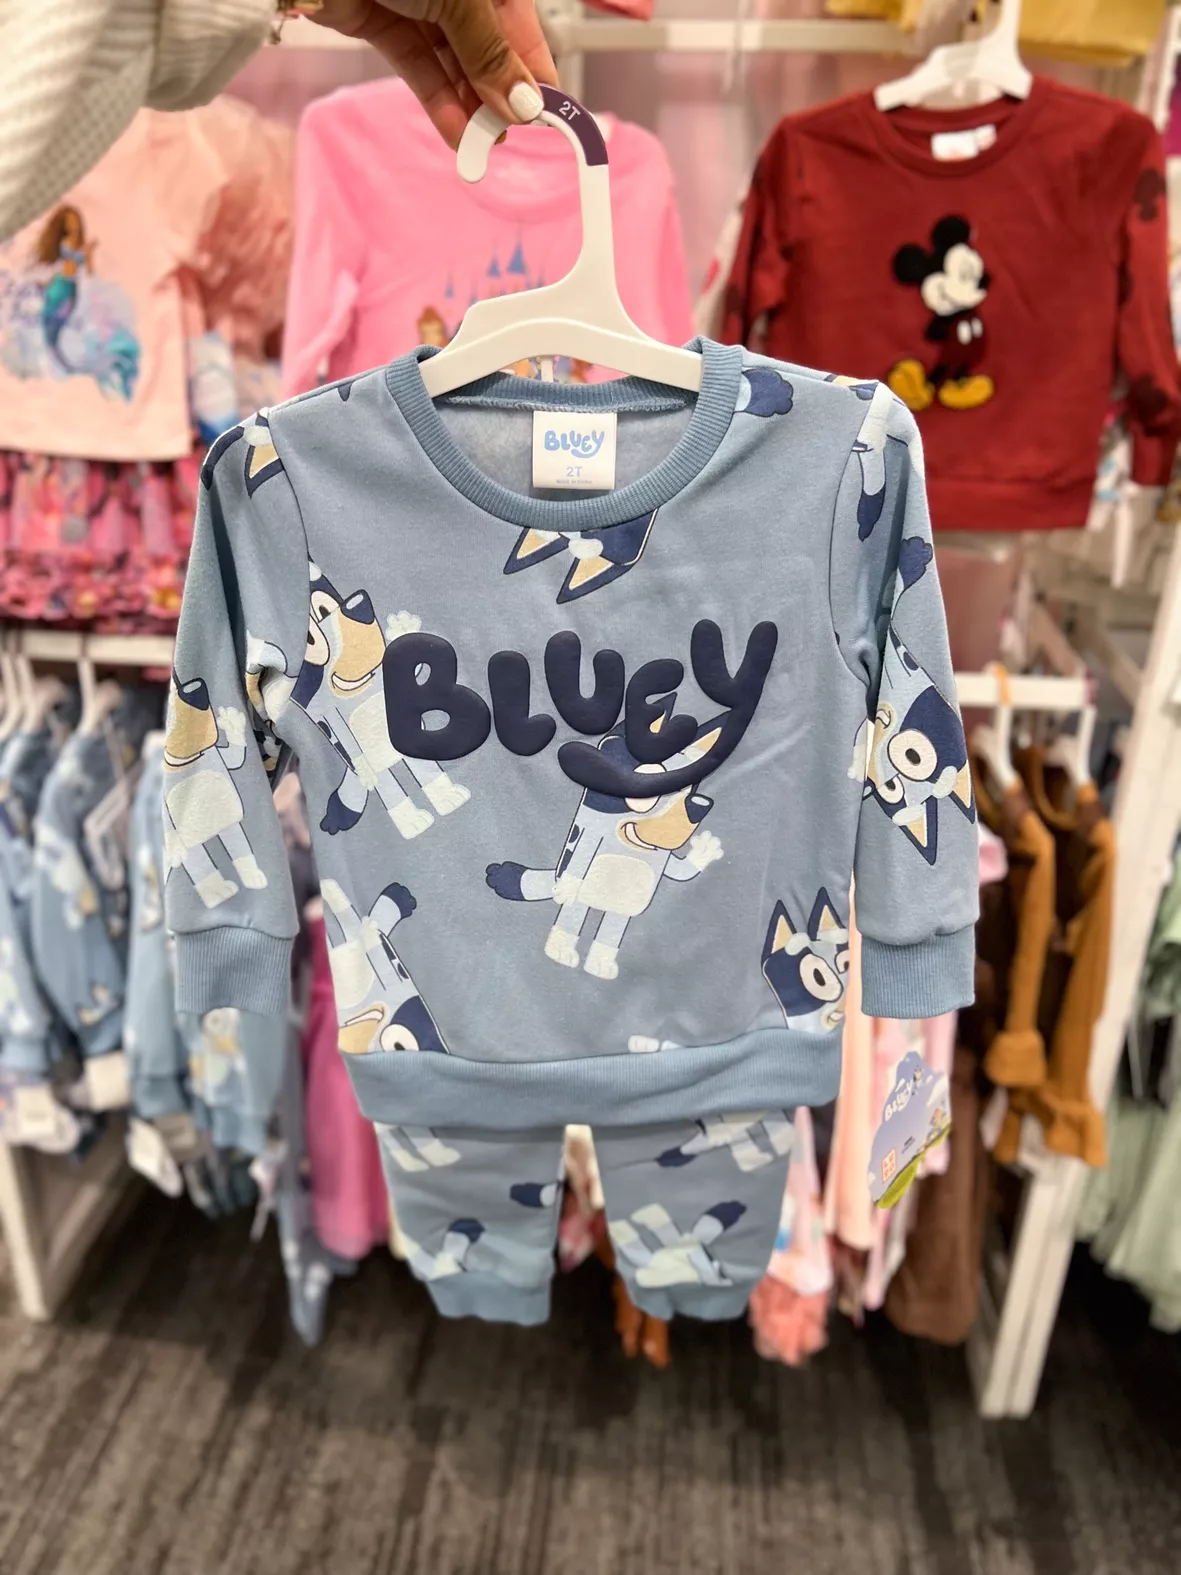 Bluey Bingo Bluey Fleece Zip Up Hoodie Toddler : Target